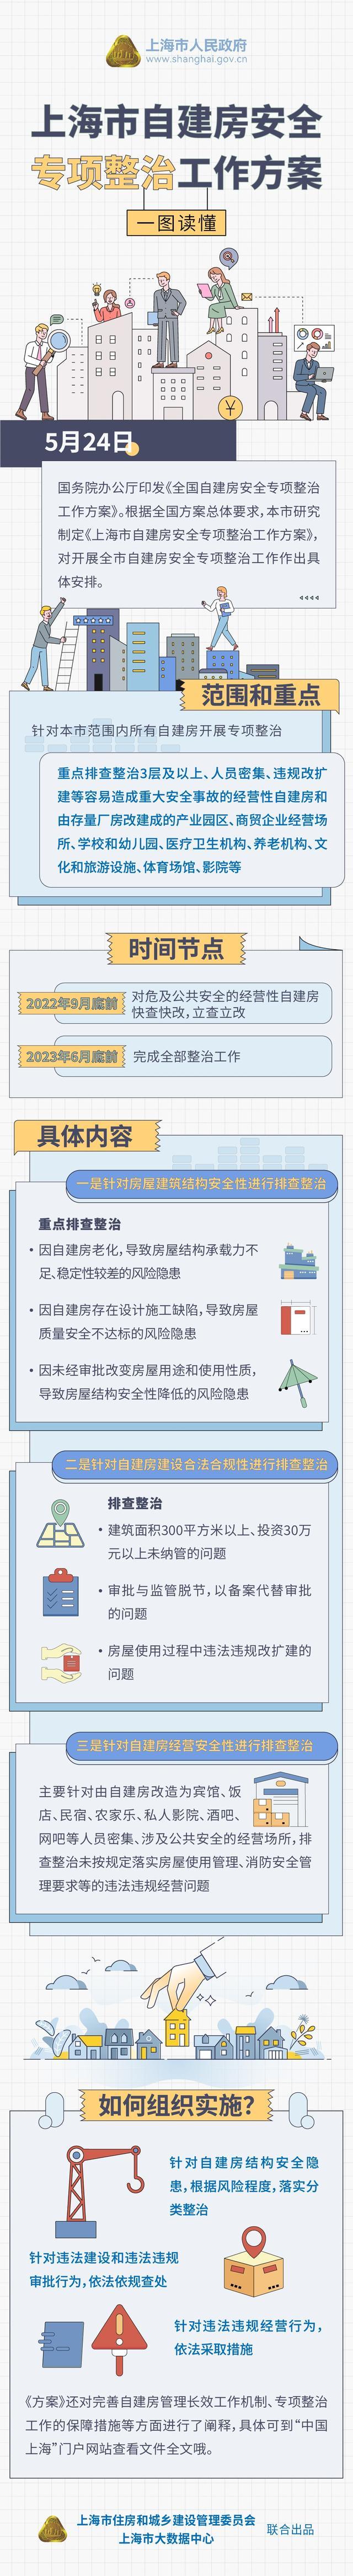 一图读懂《上海市自建房安全专项整治工作方案》